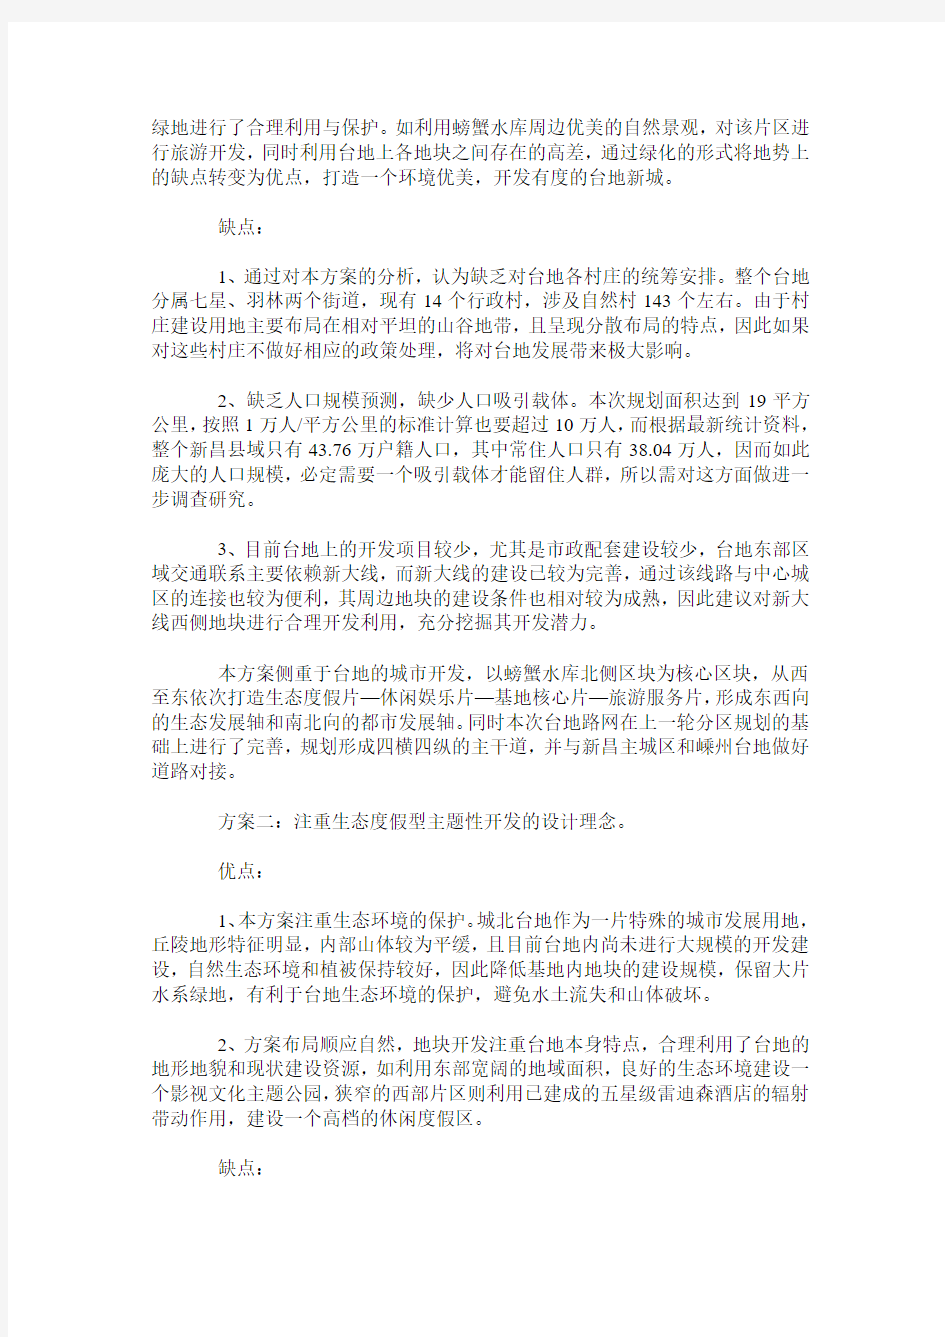 新昌县城北台地控制性详细规划案例分析